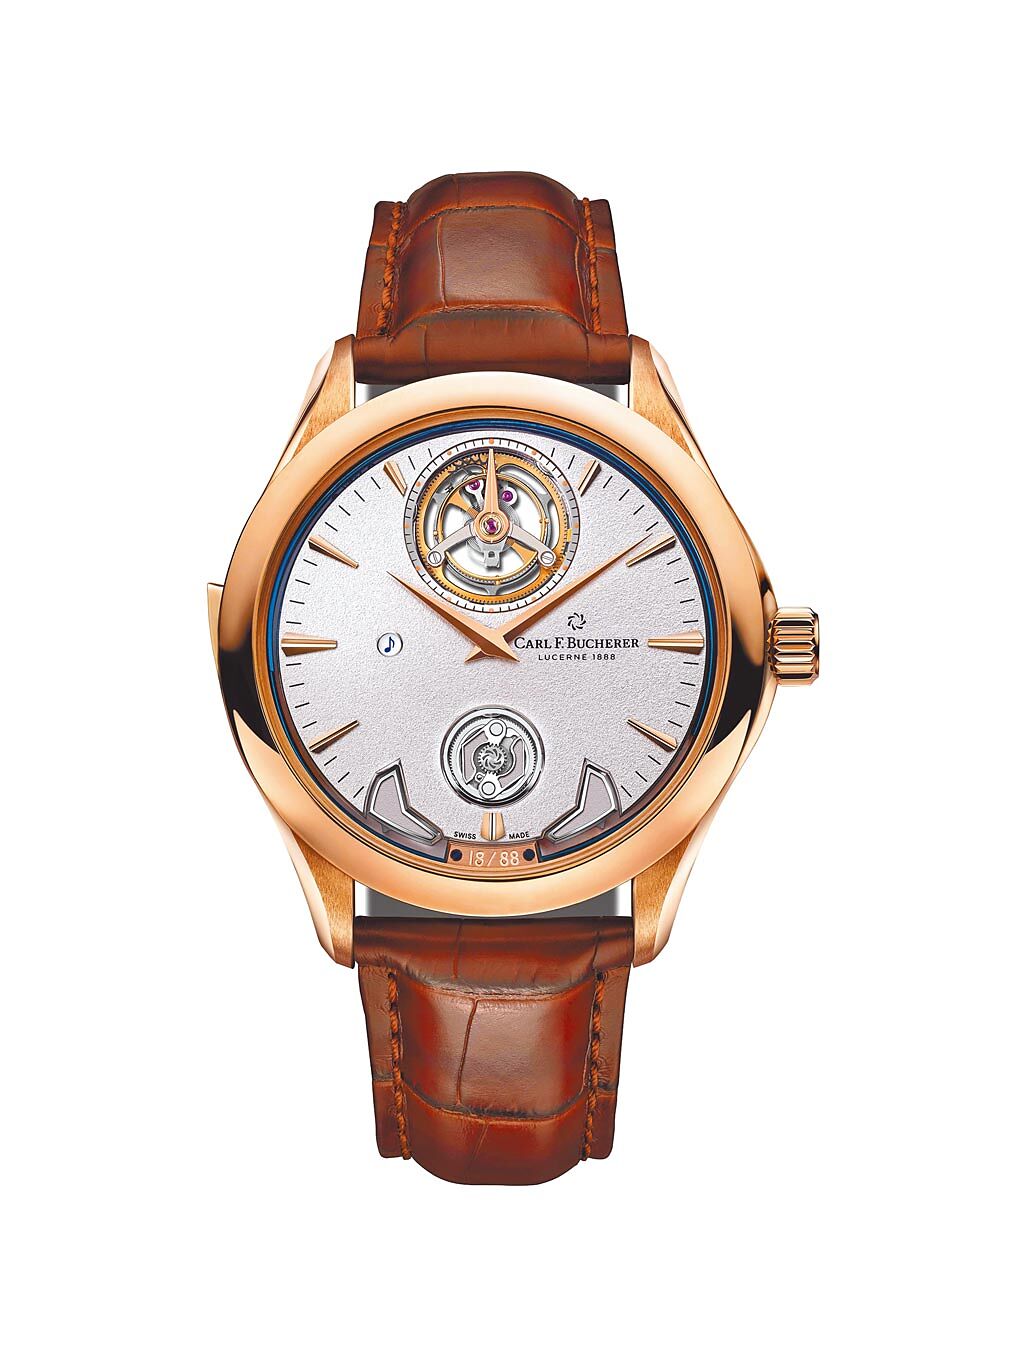 寶齊萊是少數具有研發三問表能力的瑞士腕表品牌，日前在Watches & Wonders表展上發表馬利龍交響樂三問表（Manero Minute Repeater Symphony），展現品牌的製表實力，1280萬元。（Carl F. Bucherer 提供）